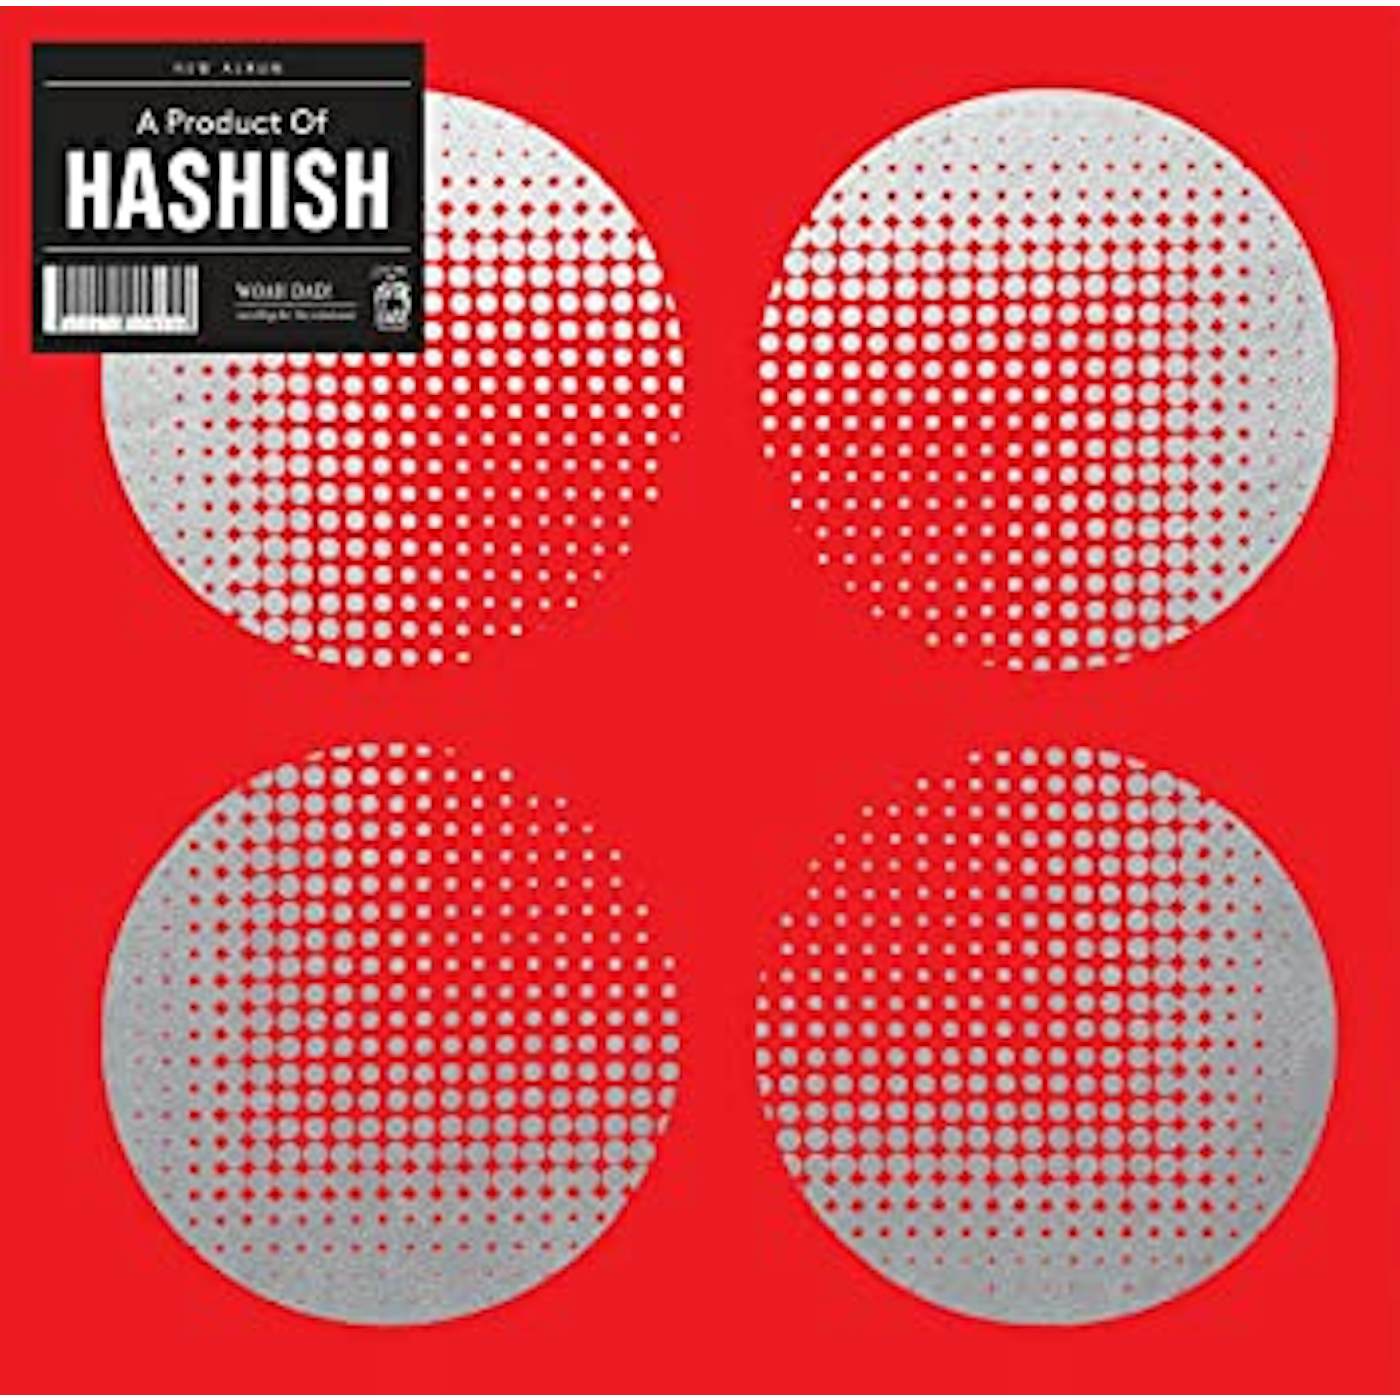 Product of Hashish Vinyl Record